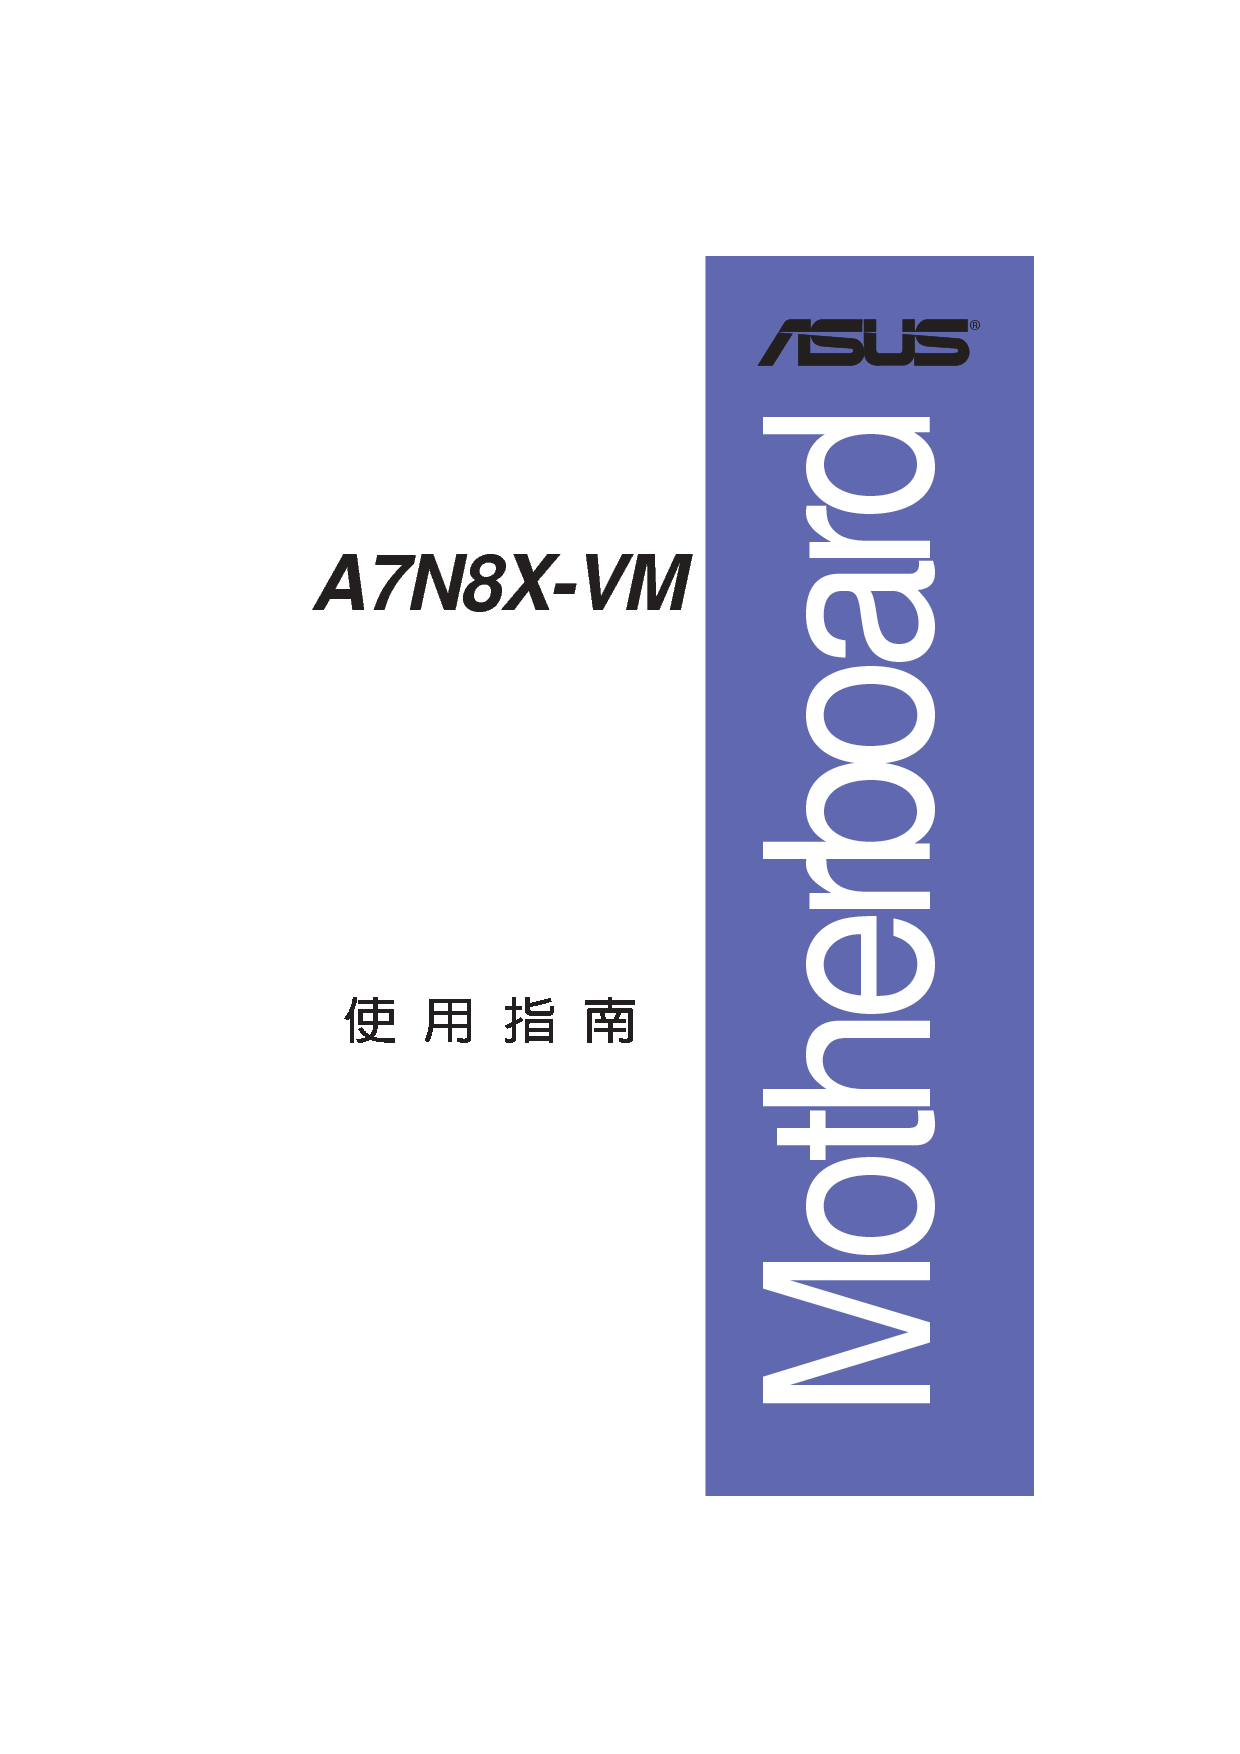 华硕 Asus A7N8X-VM 用户手册 封面